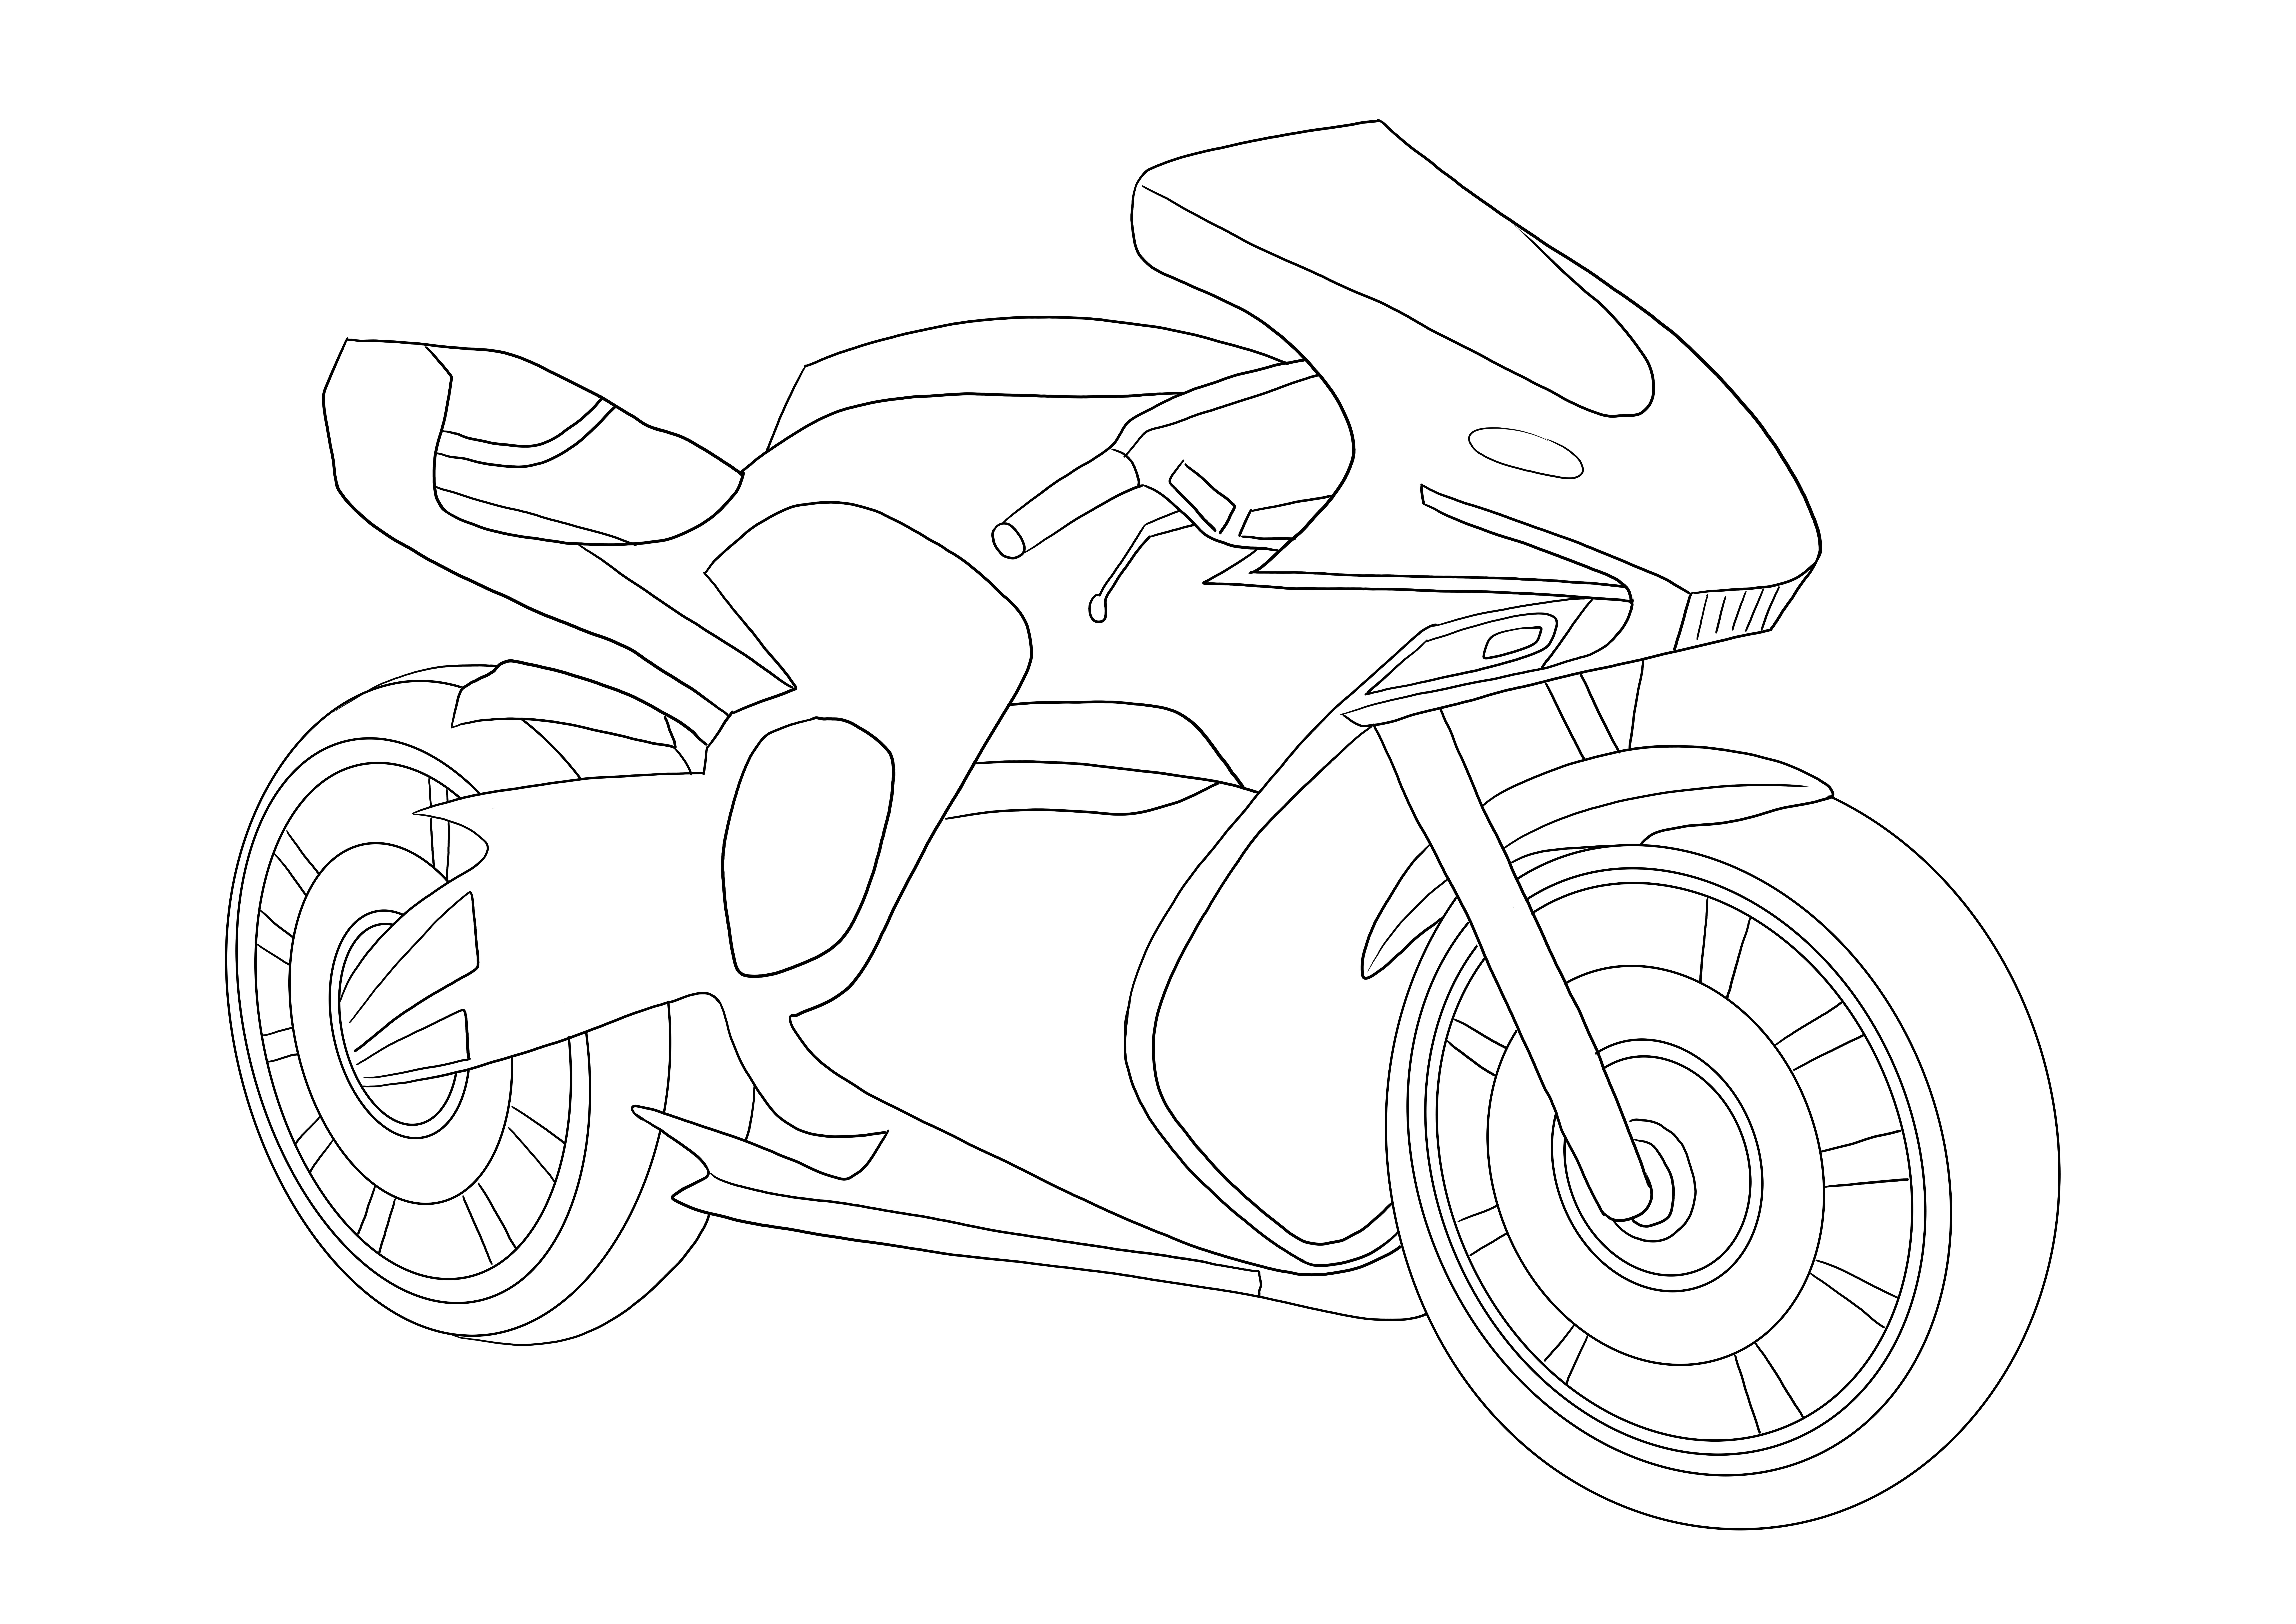 Ücretsiz indirmek için havalı yarış motosikleti boyama resmi